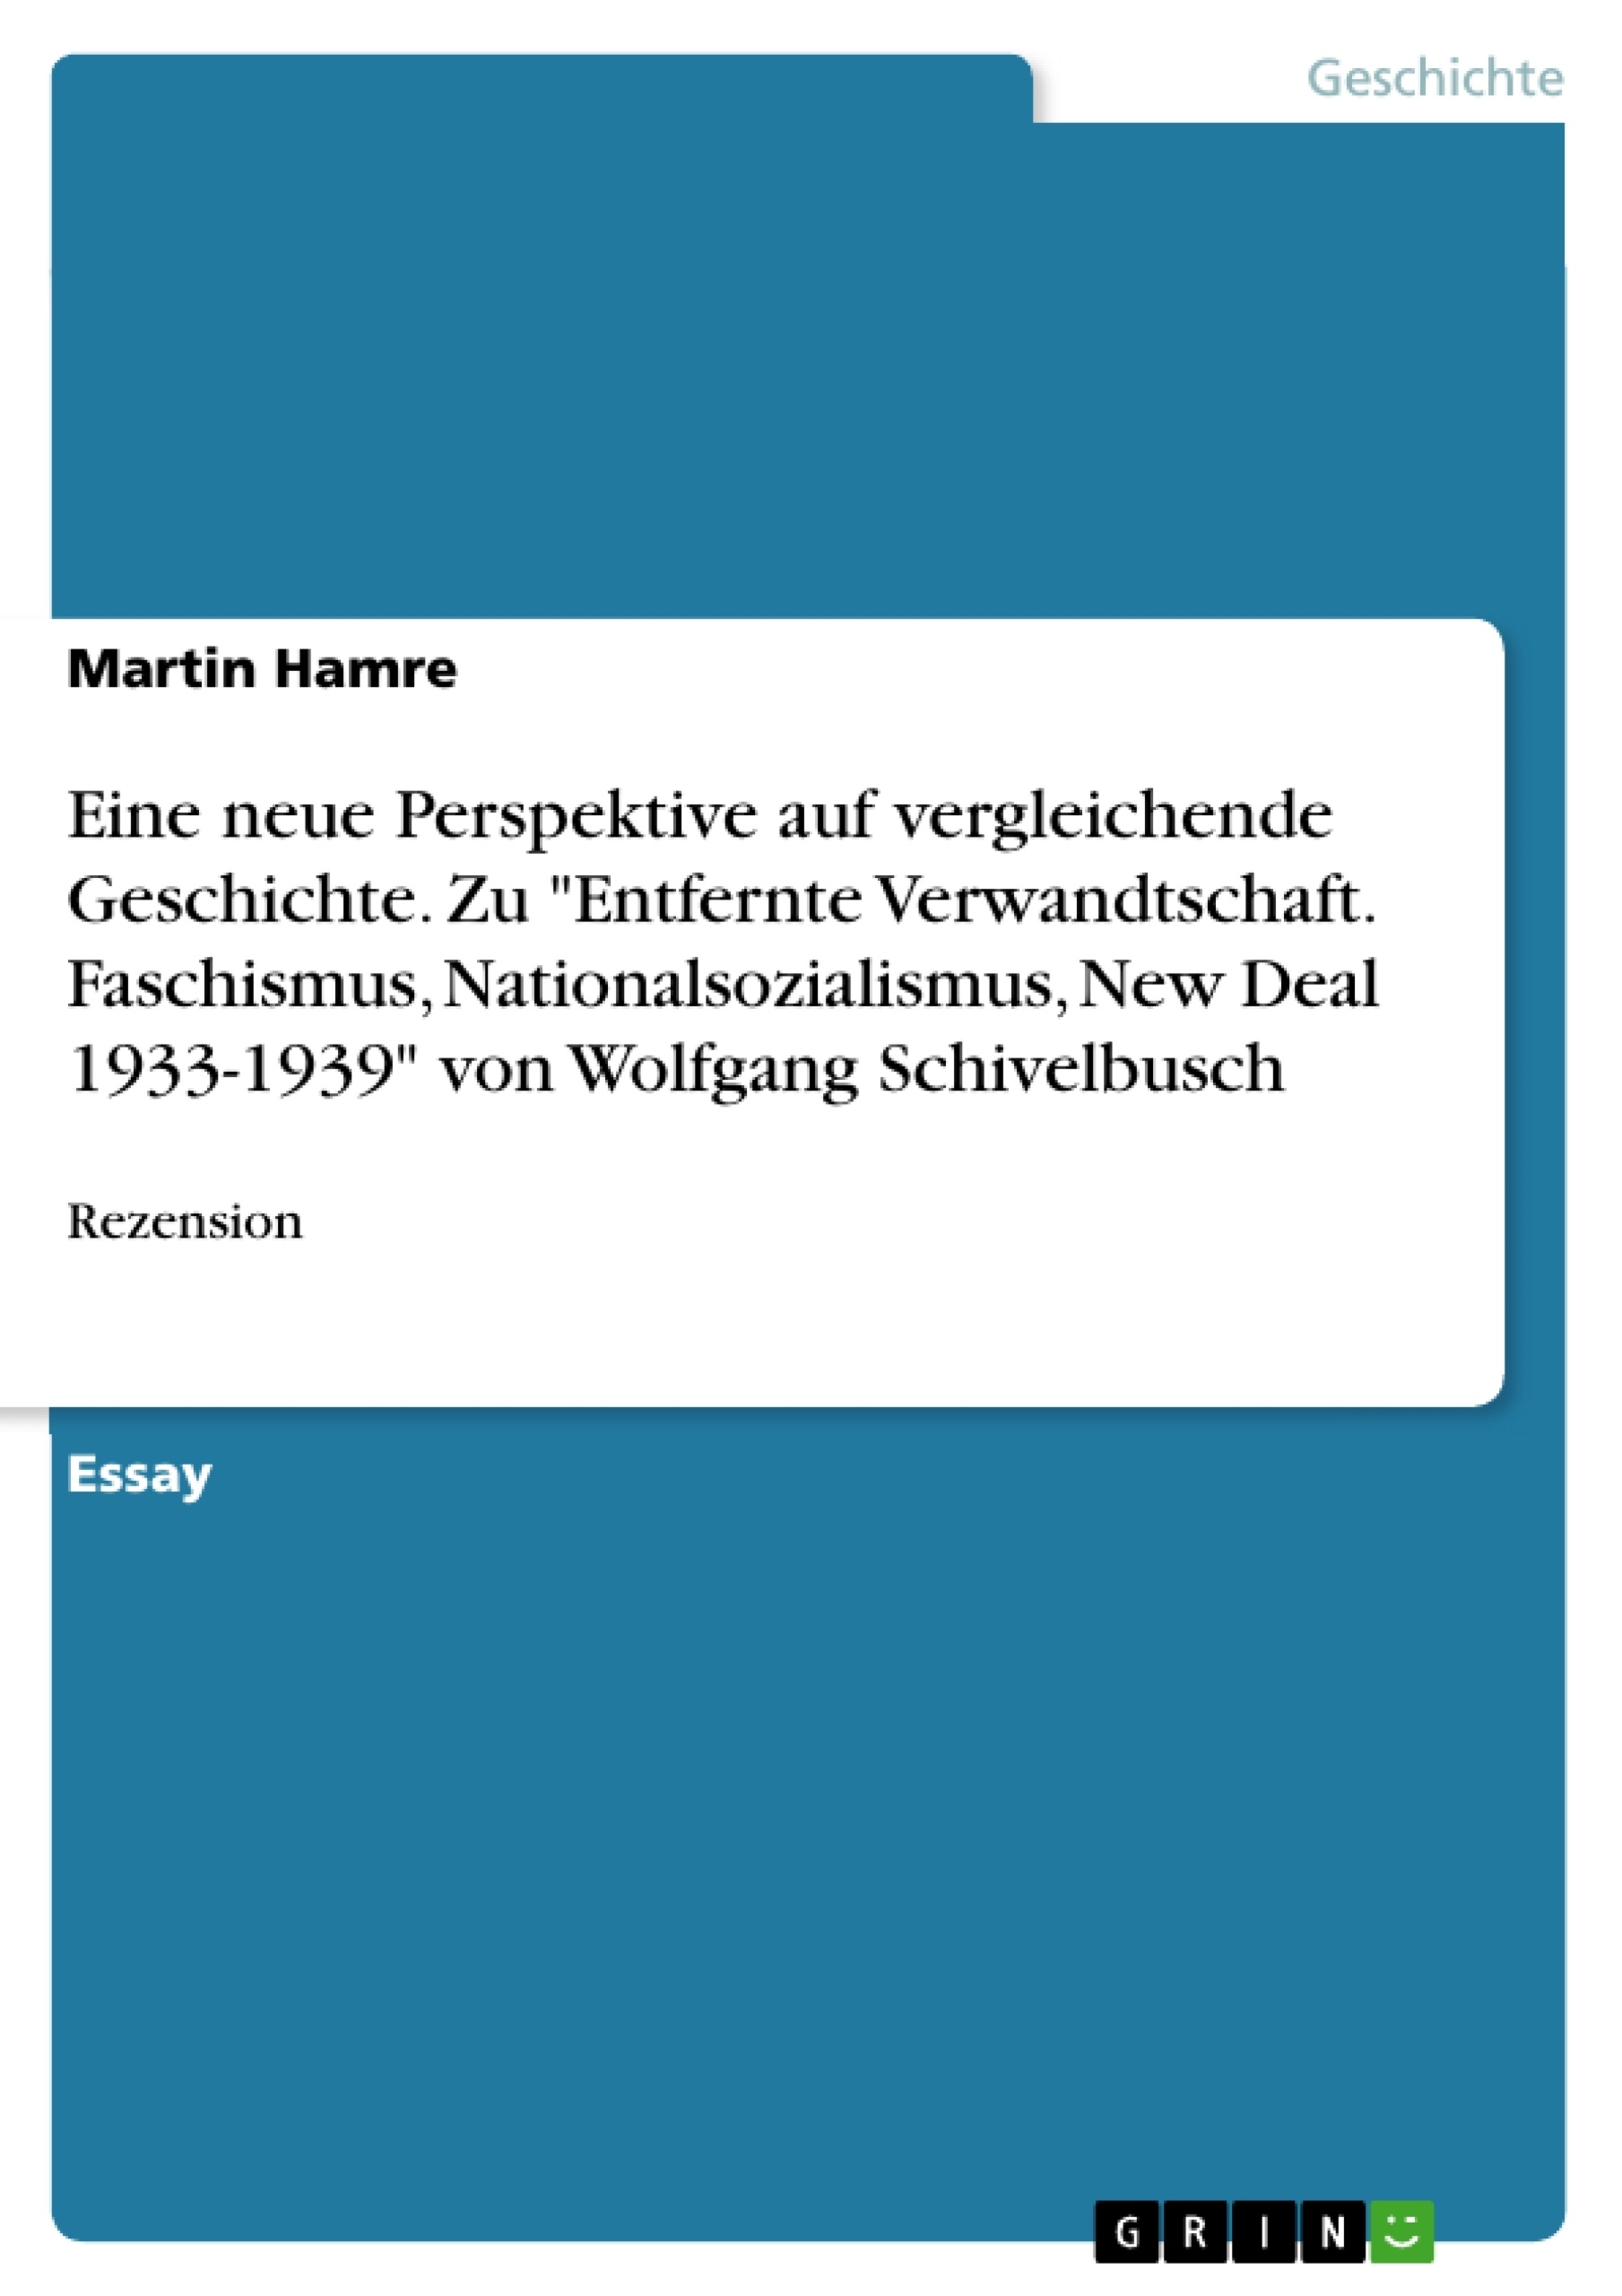 Title: Eine neue Perspektive auf vergleichende Geschichte. Zu "Entfernte Verwandtschaft. Faschismus, Nationalsozialismus, New Deal 1933-1939" von Wolfgang Schivelbusch